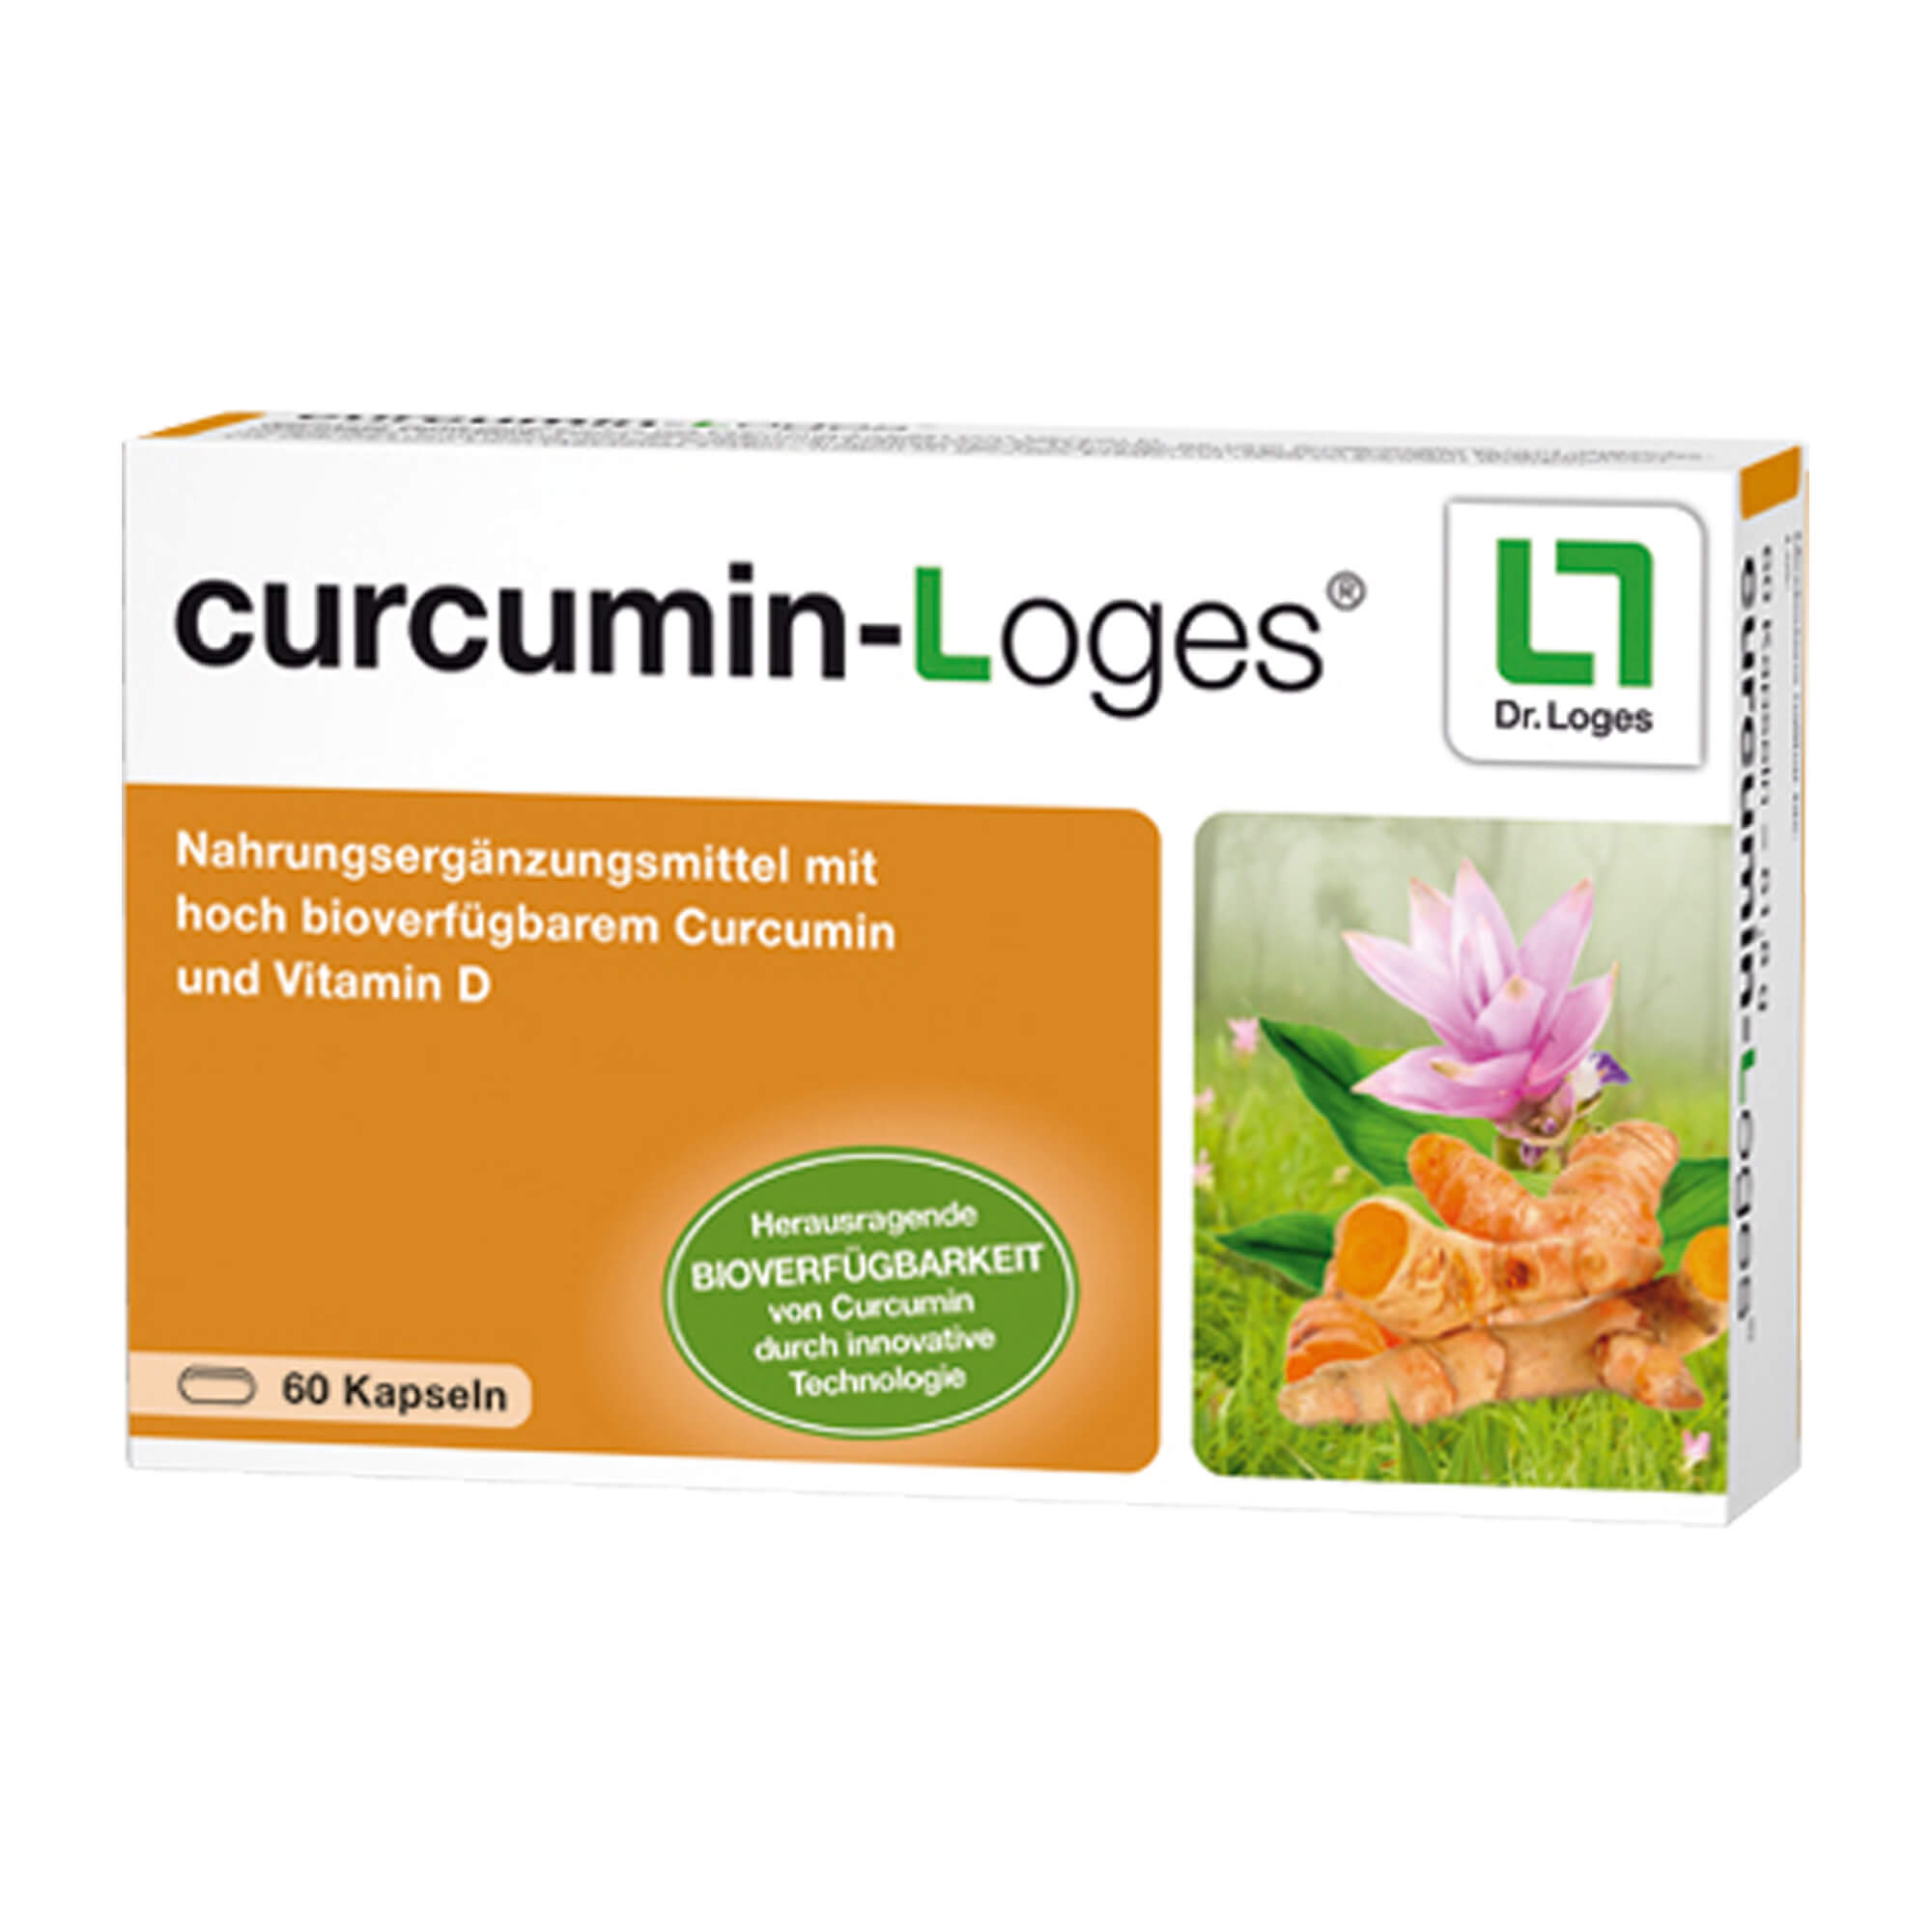 Nahrungsergänzungsmittel mit hoch bioverfügbarem Curcumin und Vitamin D.